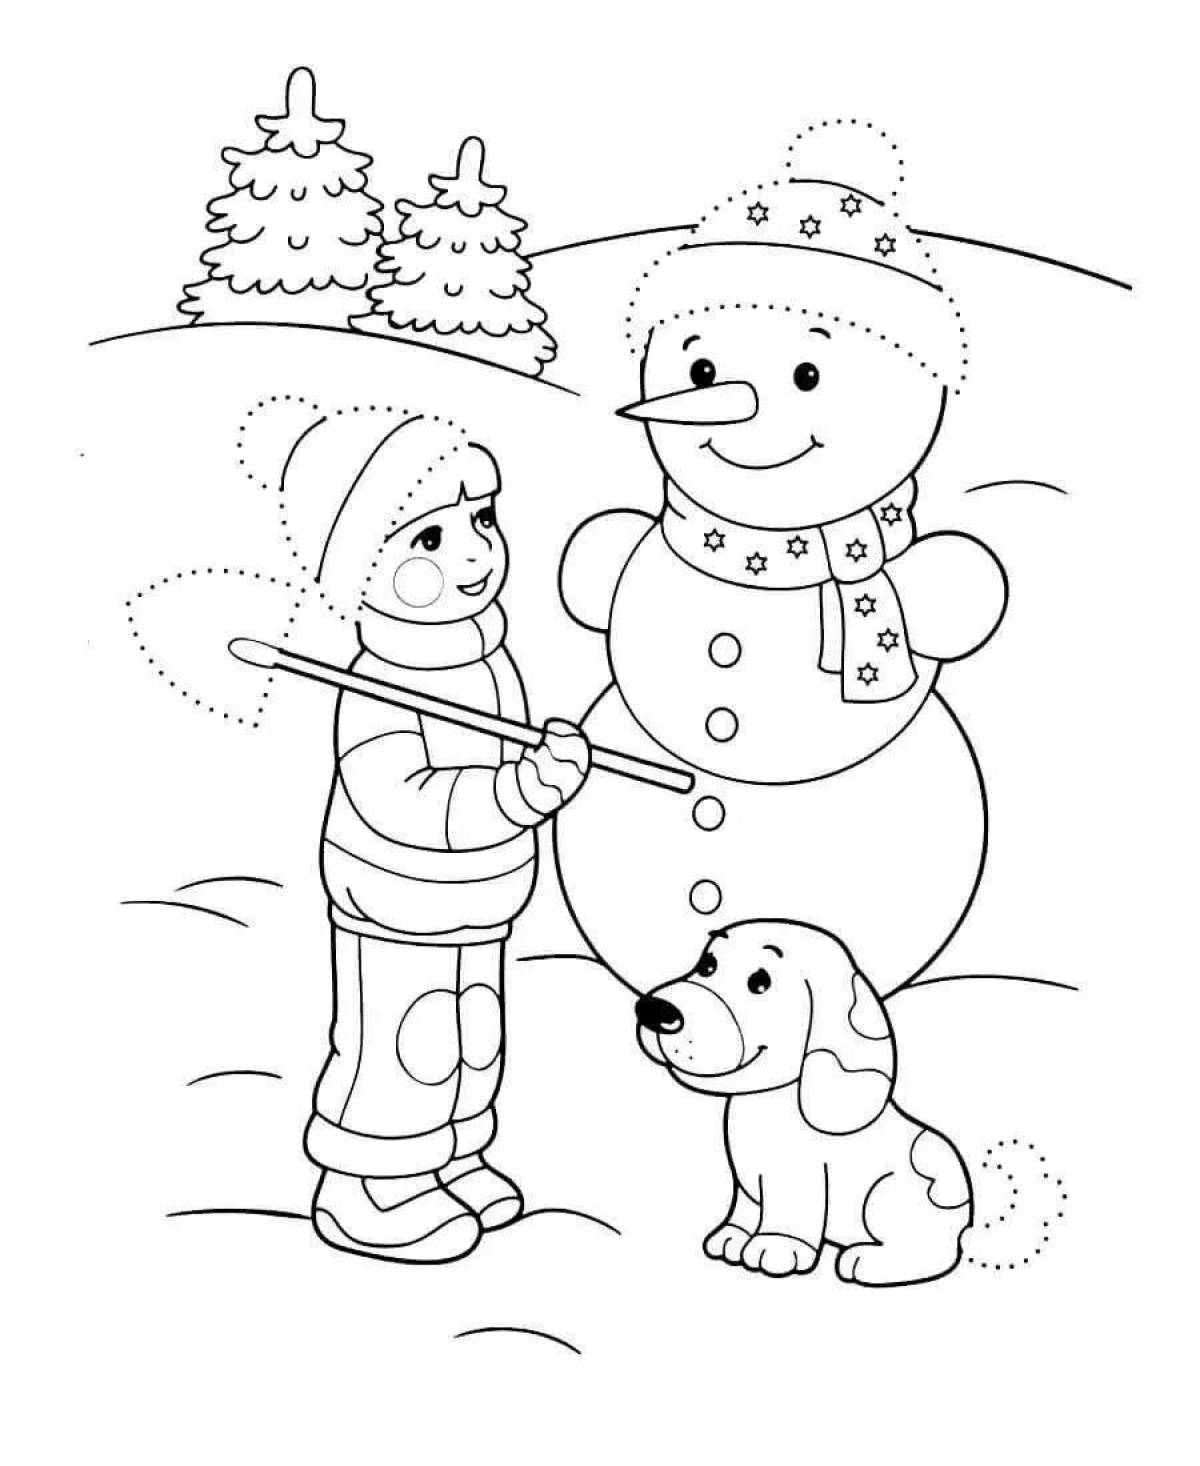 Sweet winter coloring for preschoolers